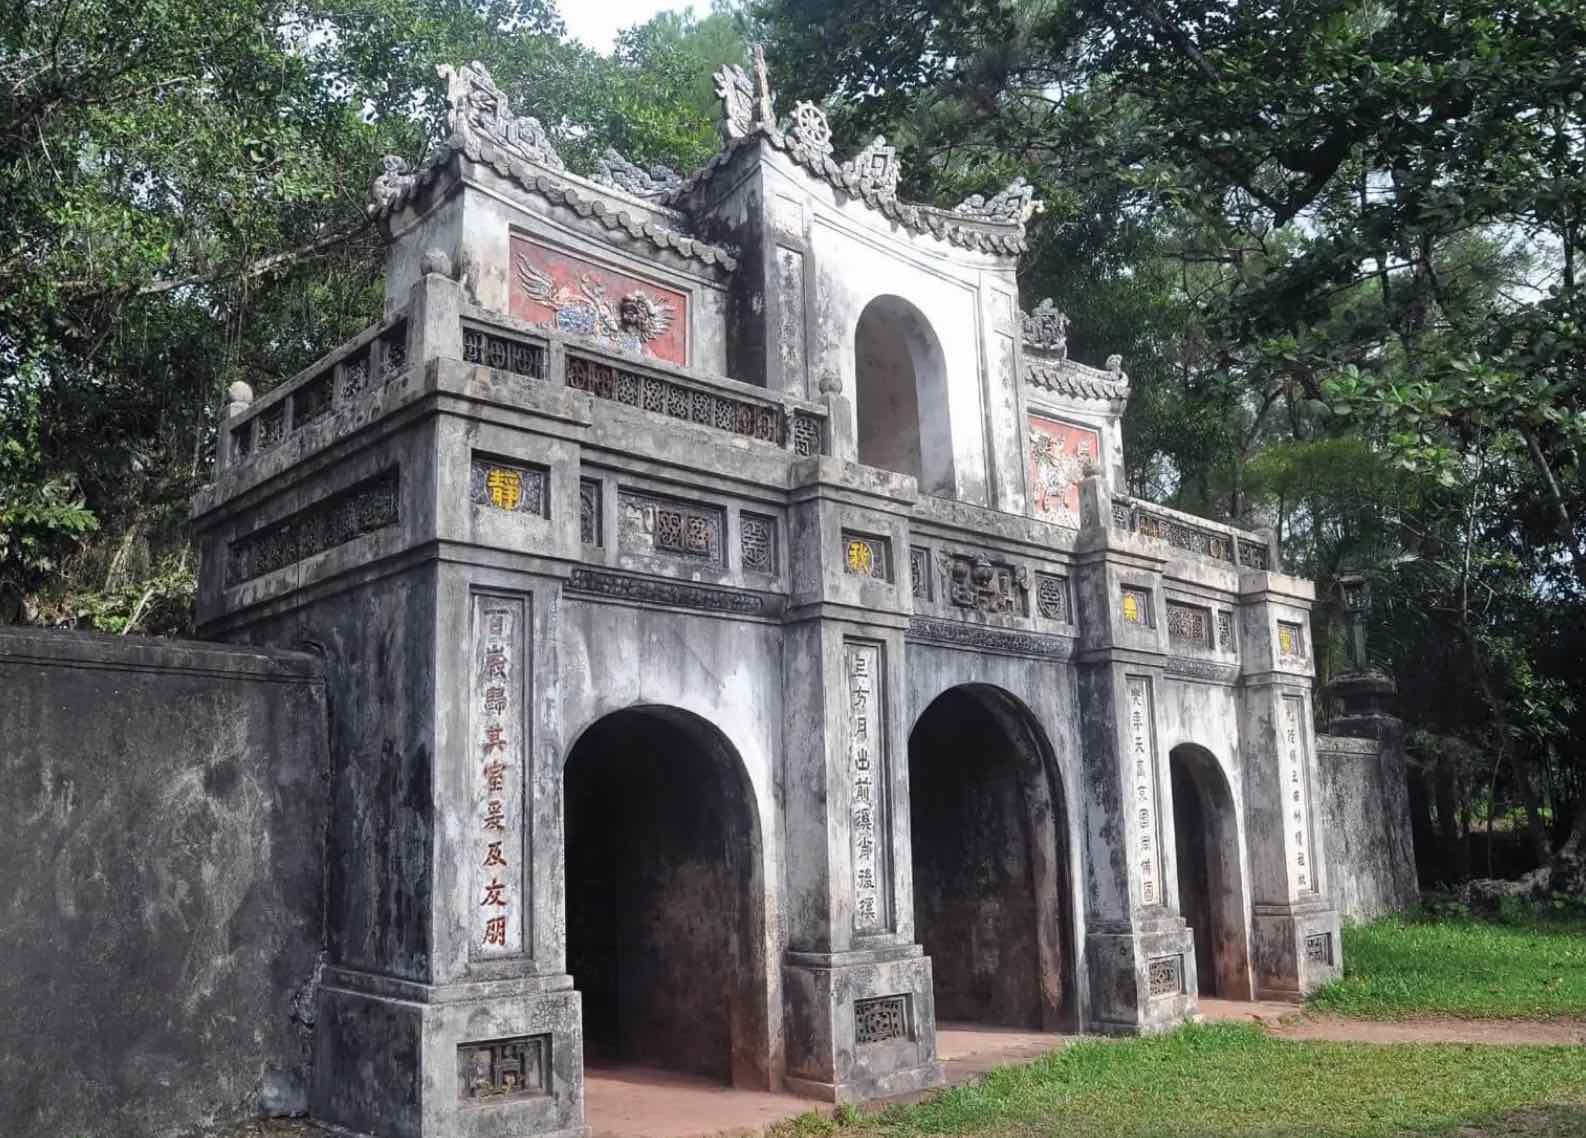 De Tu Hieu Pagoda in de stad Hue (Vietnam), waar Thich Nhat Hanh als jonge monnik geconfronteerd werd met de Franse koloniale bezetting.